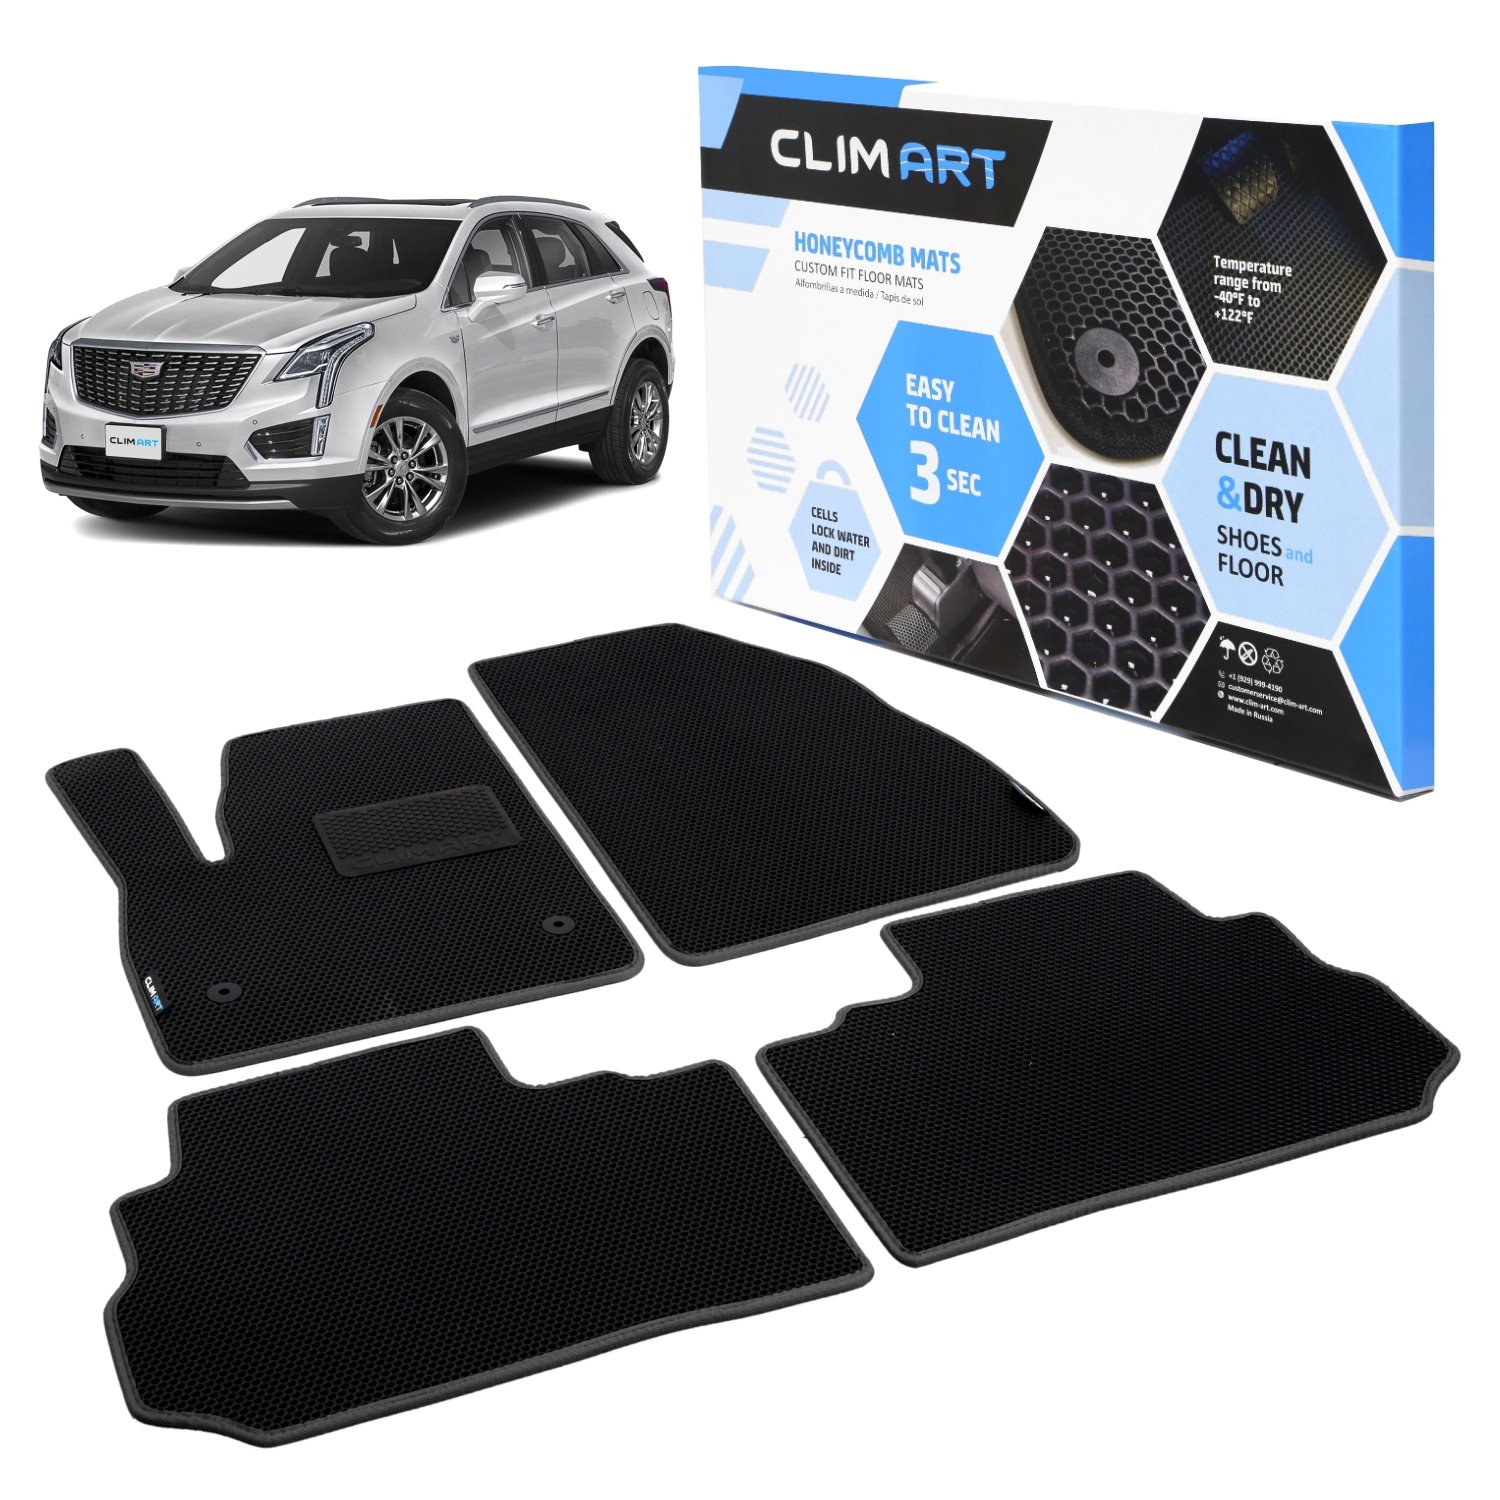 CLIM ART Honeycomb Custom Fit Floor Mats Fits Select Cadillac XT5